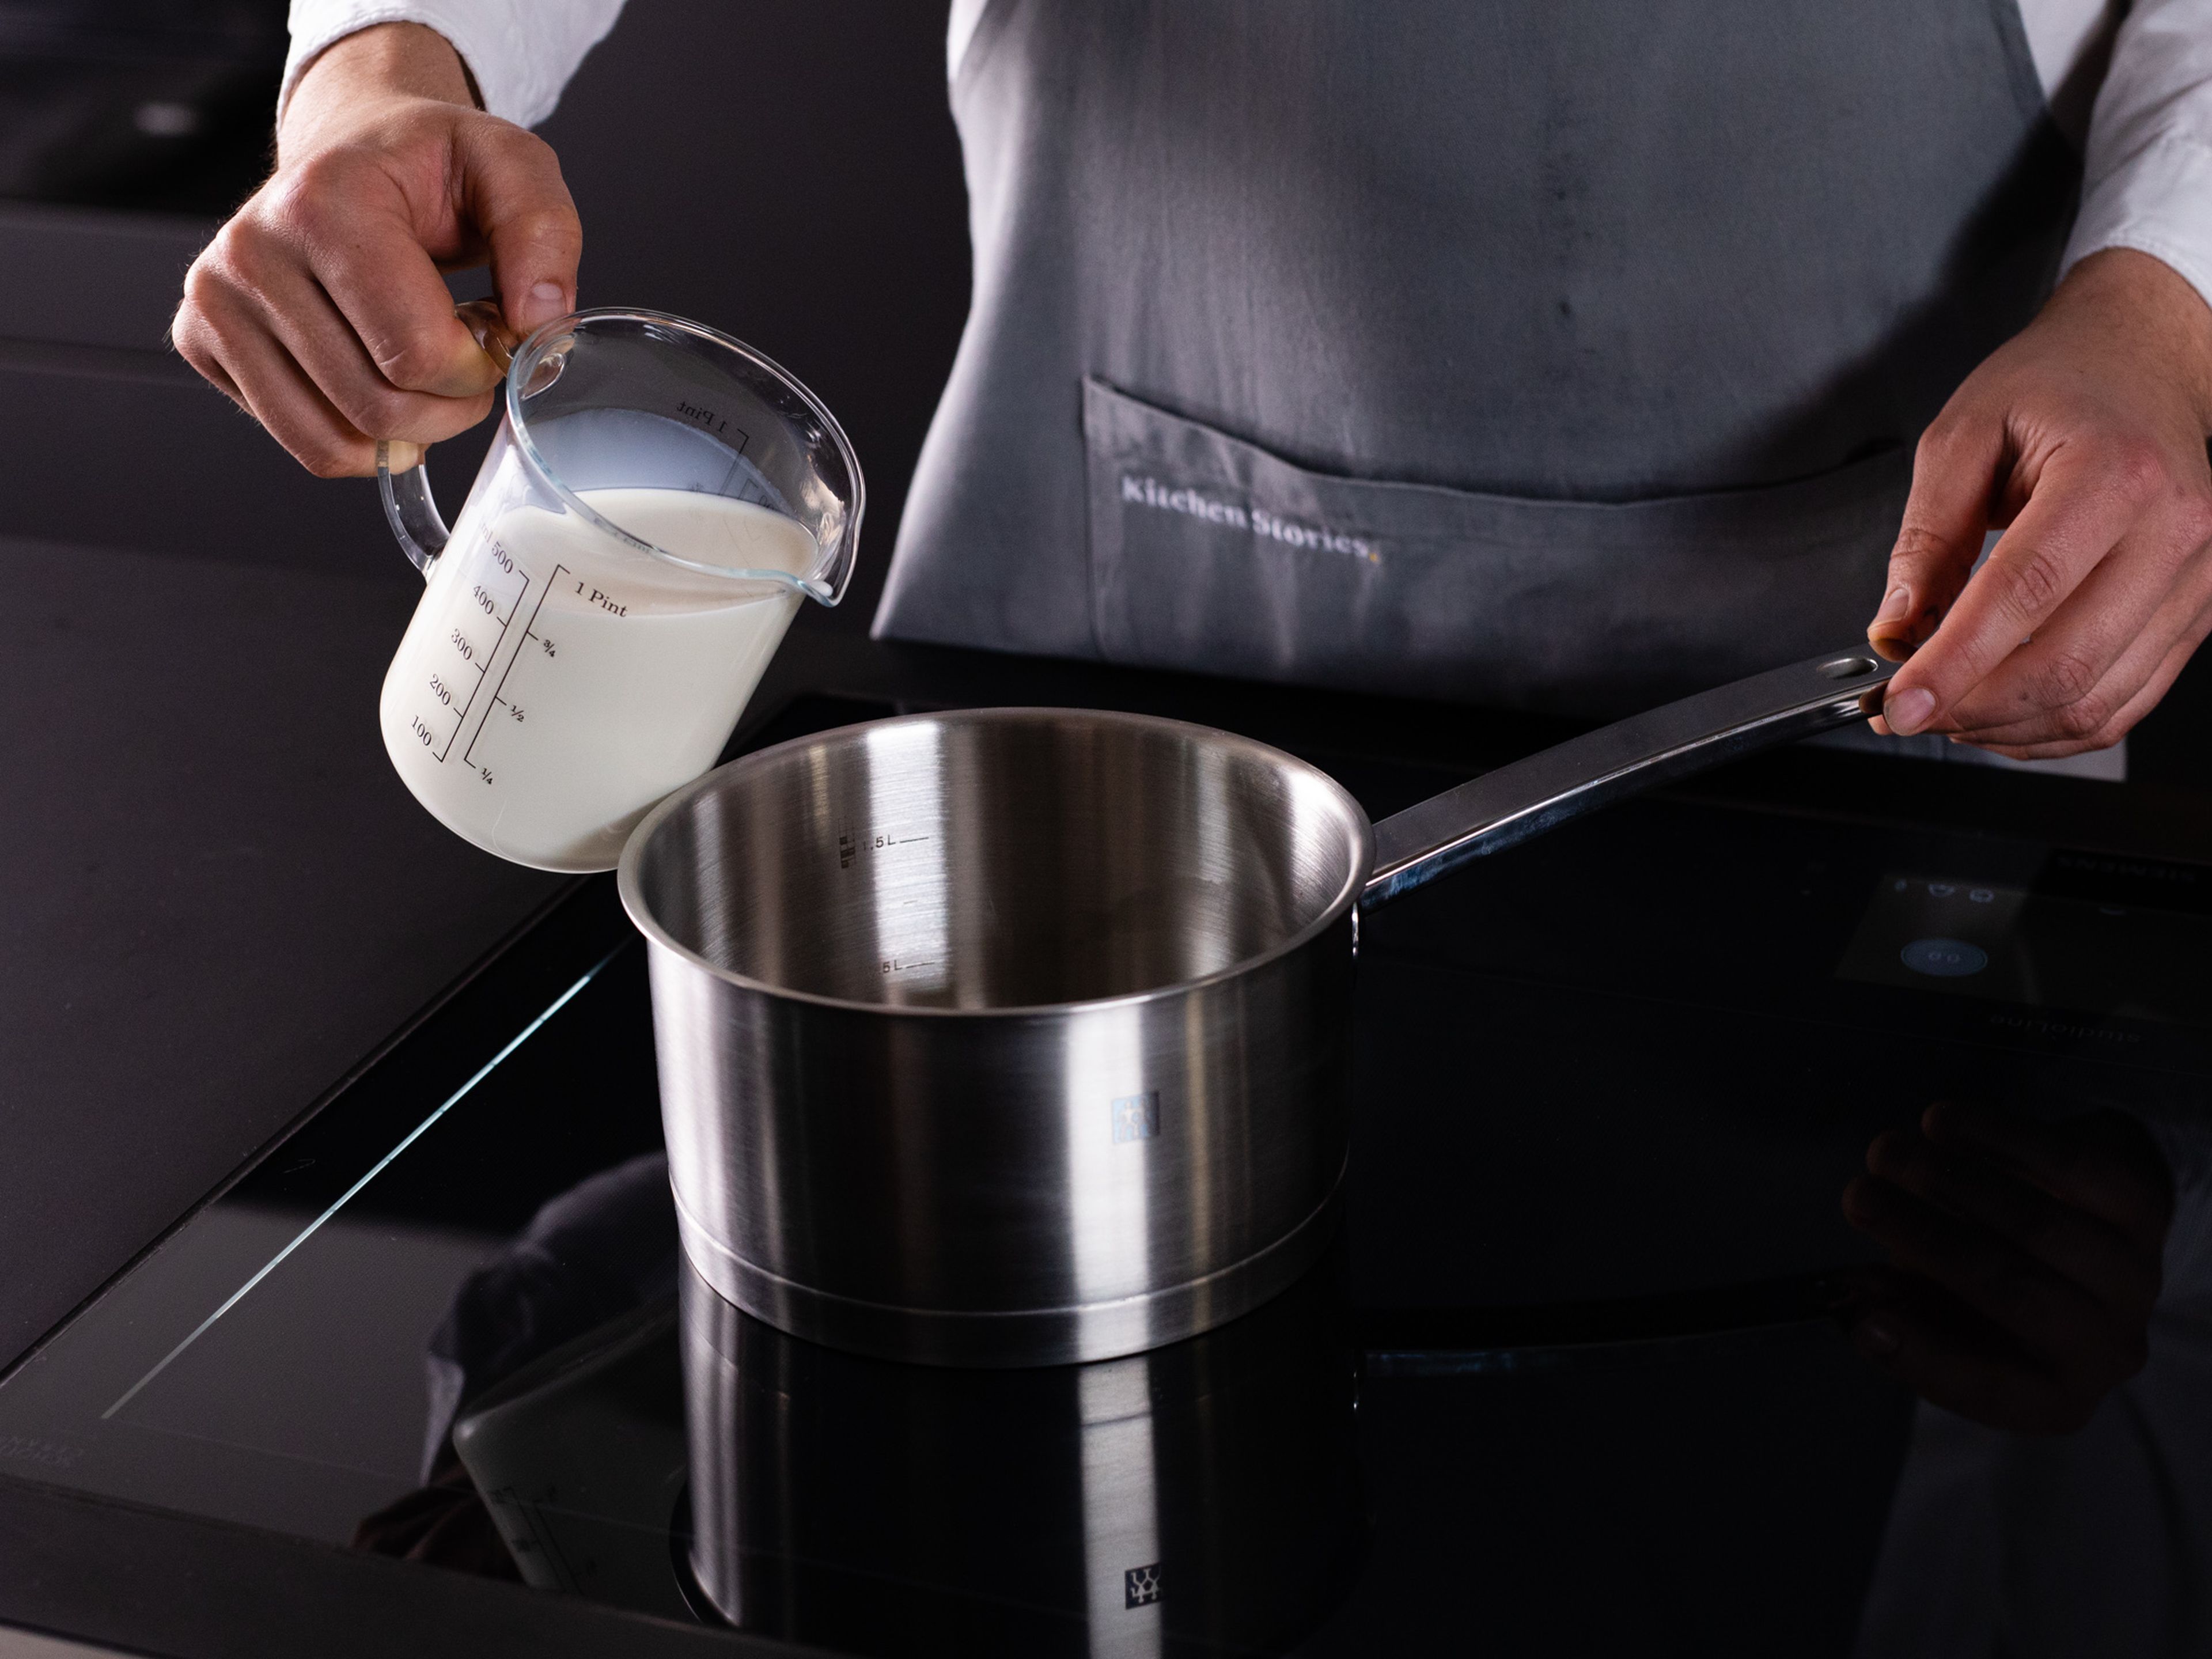 Ofen auf 180°C vorheizen. Vanillepuddingpulver mit einem Teil der Milch vermengen. Butter, Zucker und die restliche Milch unter ständigem Rühren in einem Stieltopf erhitzen. Die Puddingpulver-Milch-Mischung in den Topf dazugeben und für ca. 3 Min. konstant einrühren. Die Mischung in eine Schüssel geben, mit Plastikfolie abdecken und auf Raumtemperatur abkühlen lassen.